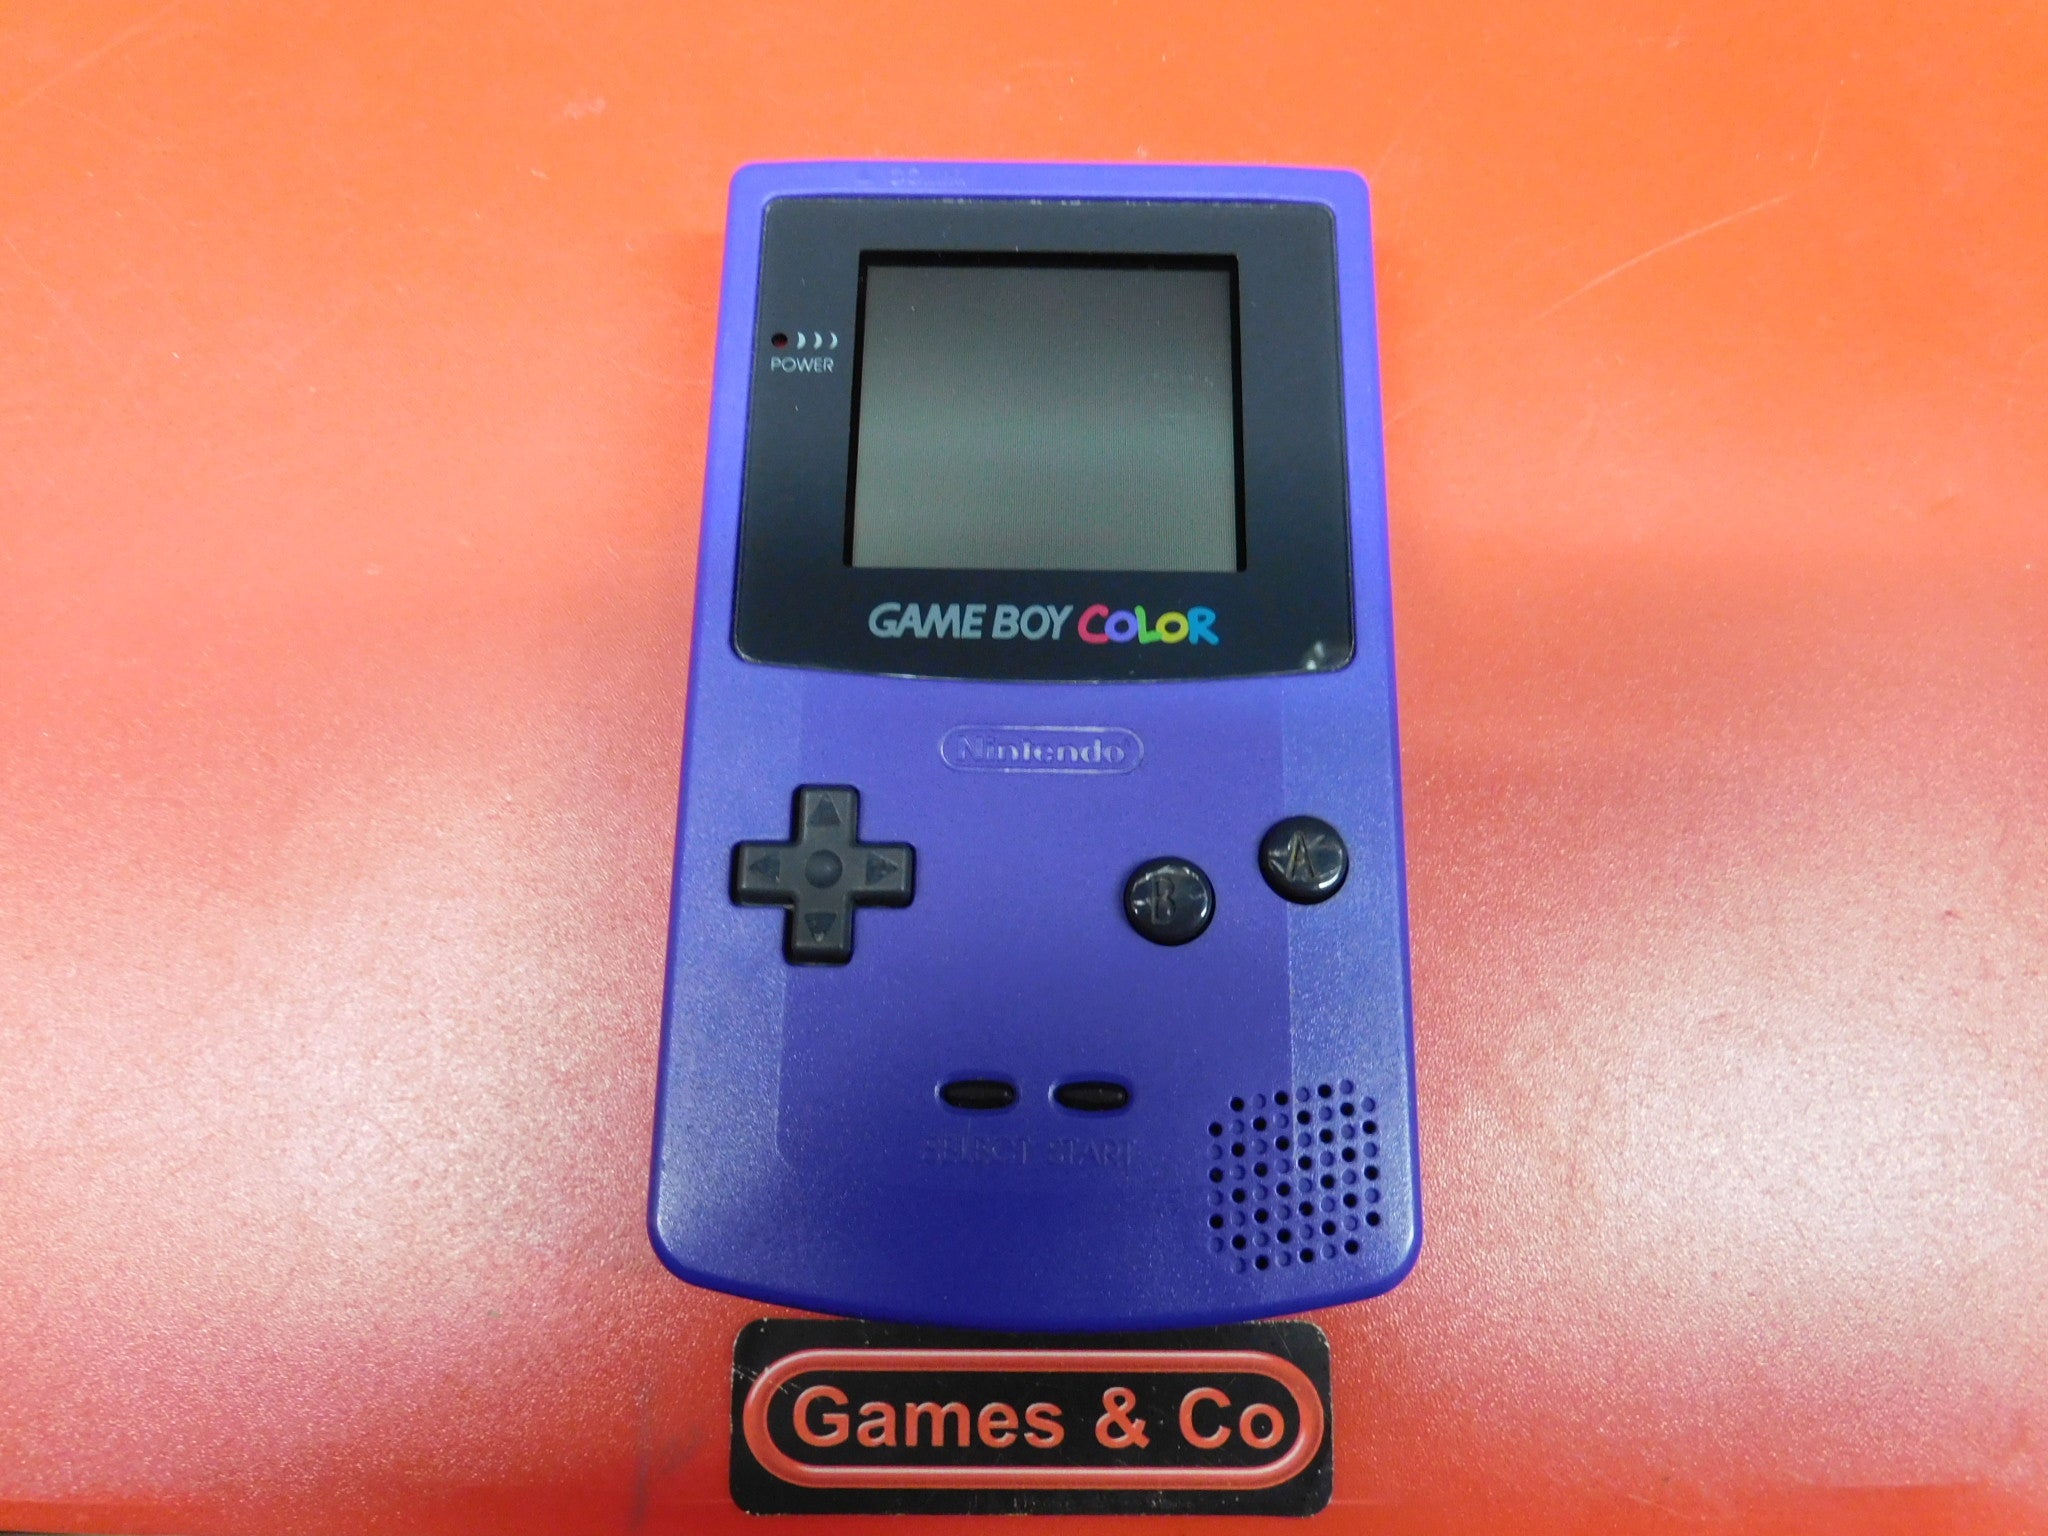 Nintendo Gameboy Game Boy Color Console (Grape)